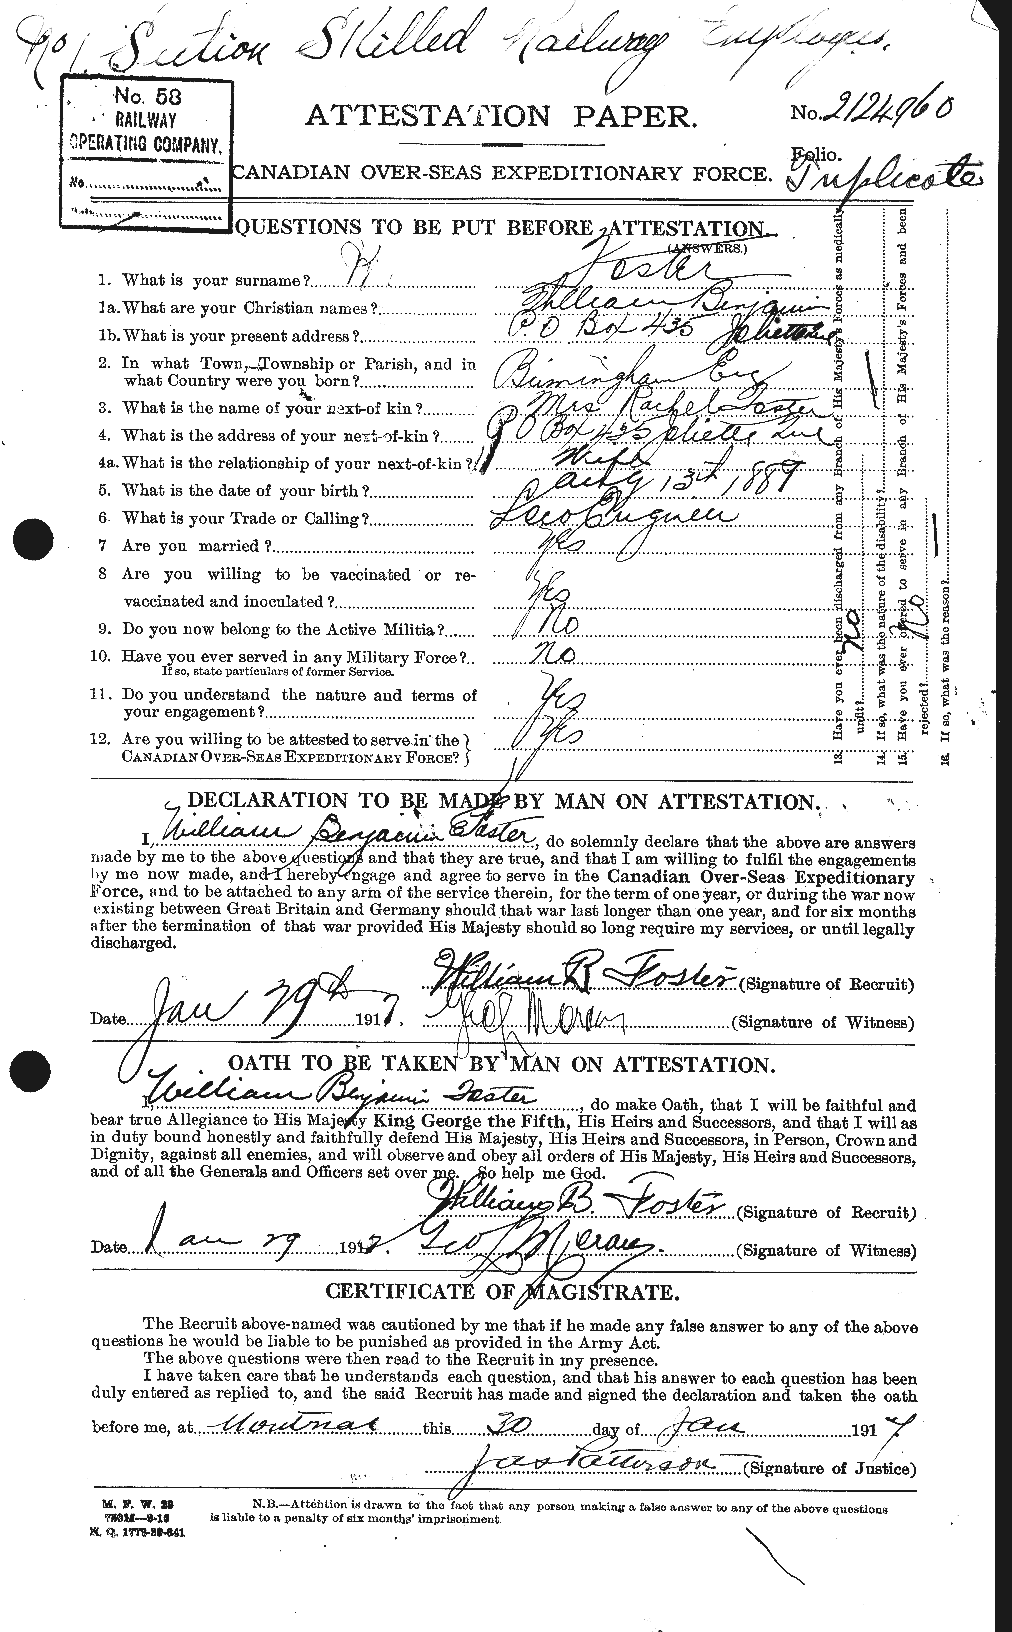 Dossiers du Personnel de la Première Guerre mondiale - CEC 328729a